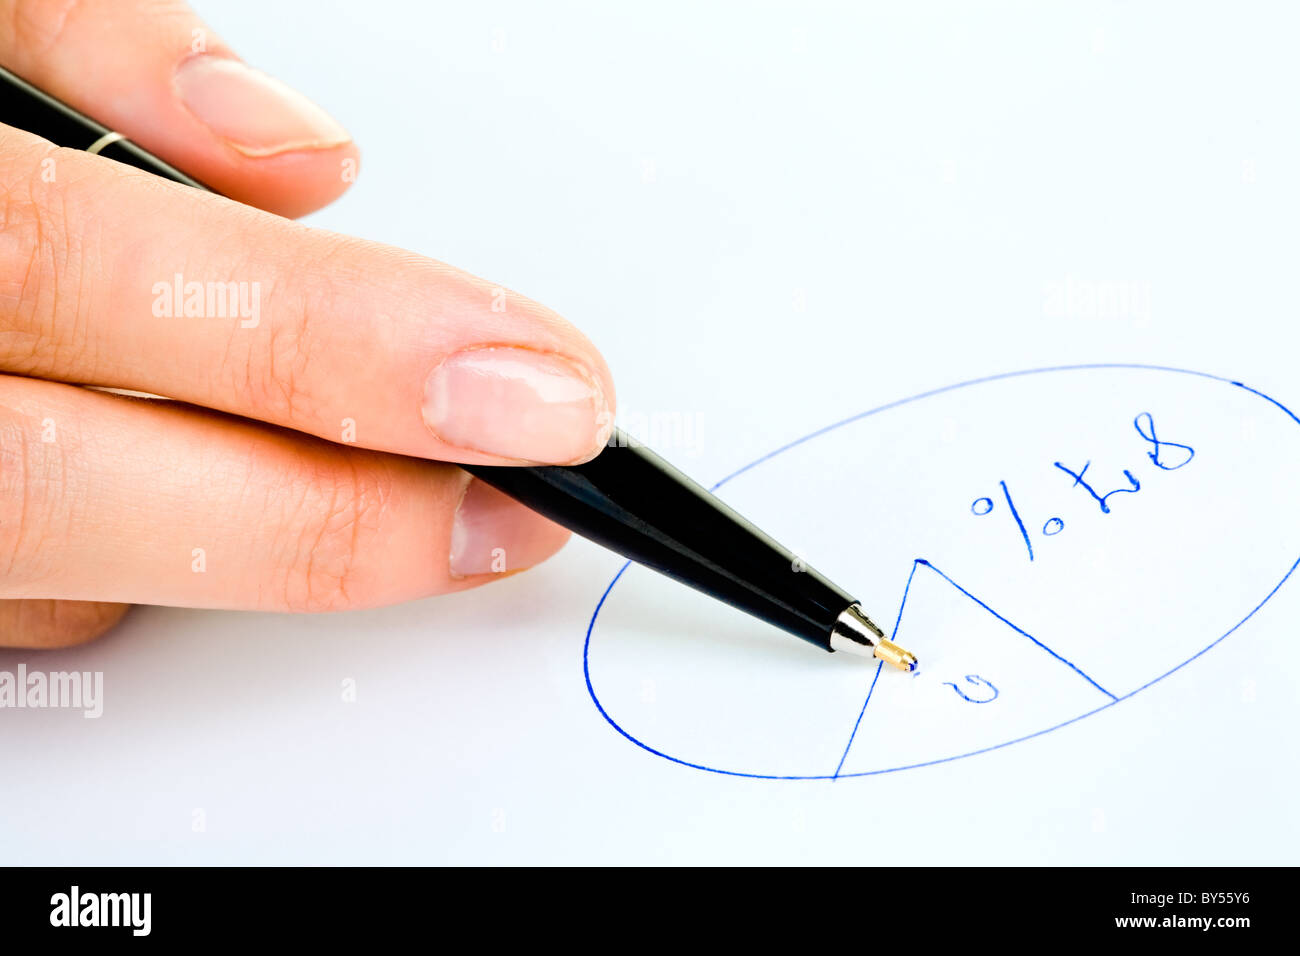 Nahaufnahme der menschlichen Hand hält einen Stift und ein rundes Diagramm auf Papier zeichnen Stockfoto